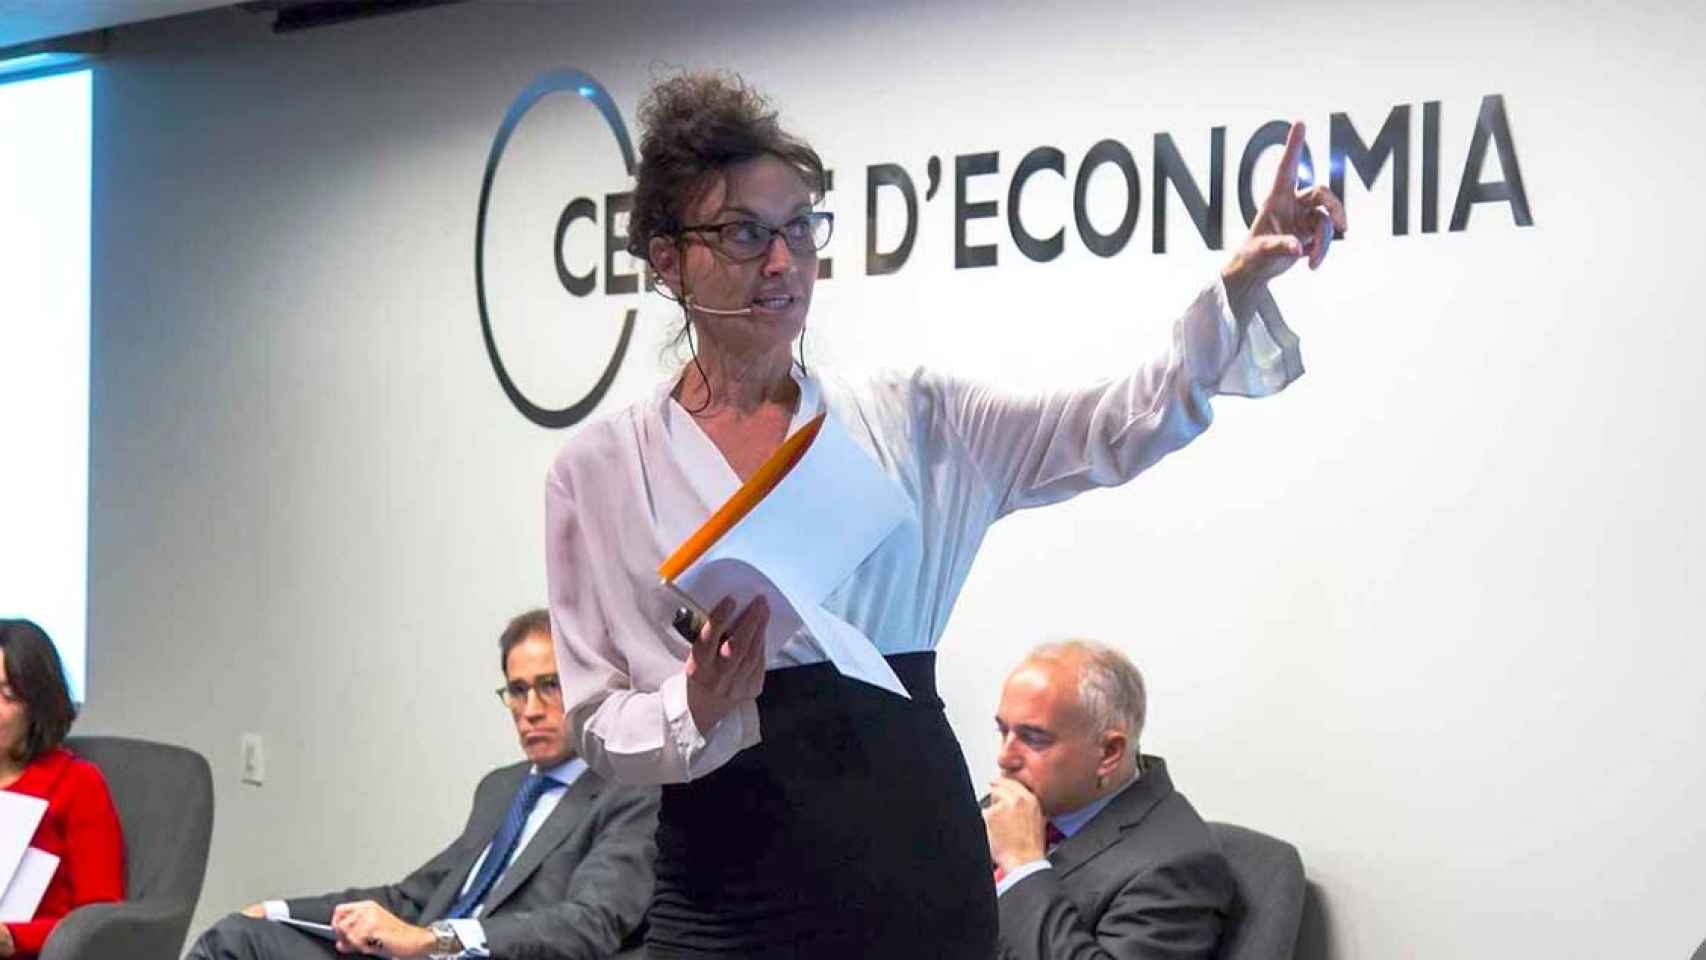 Rosa Cañadas, miembro de la Junta Directiva del Círculo de Economía / REDES